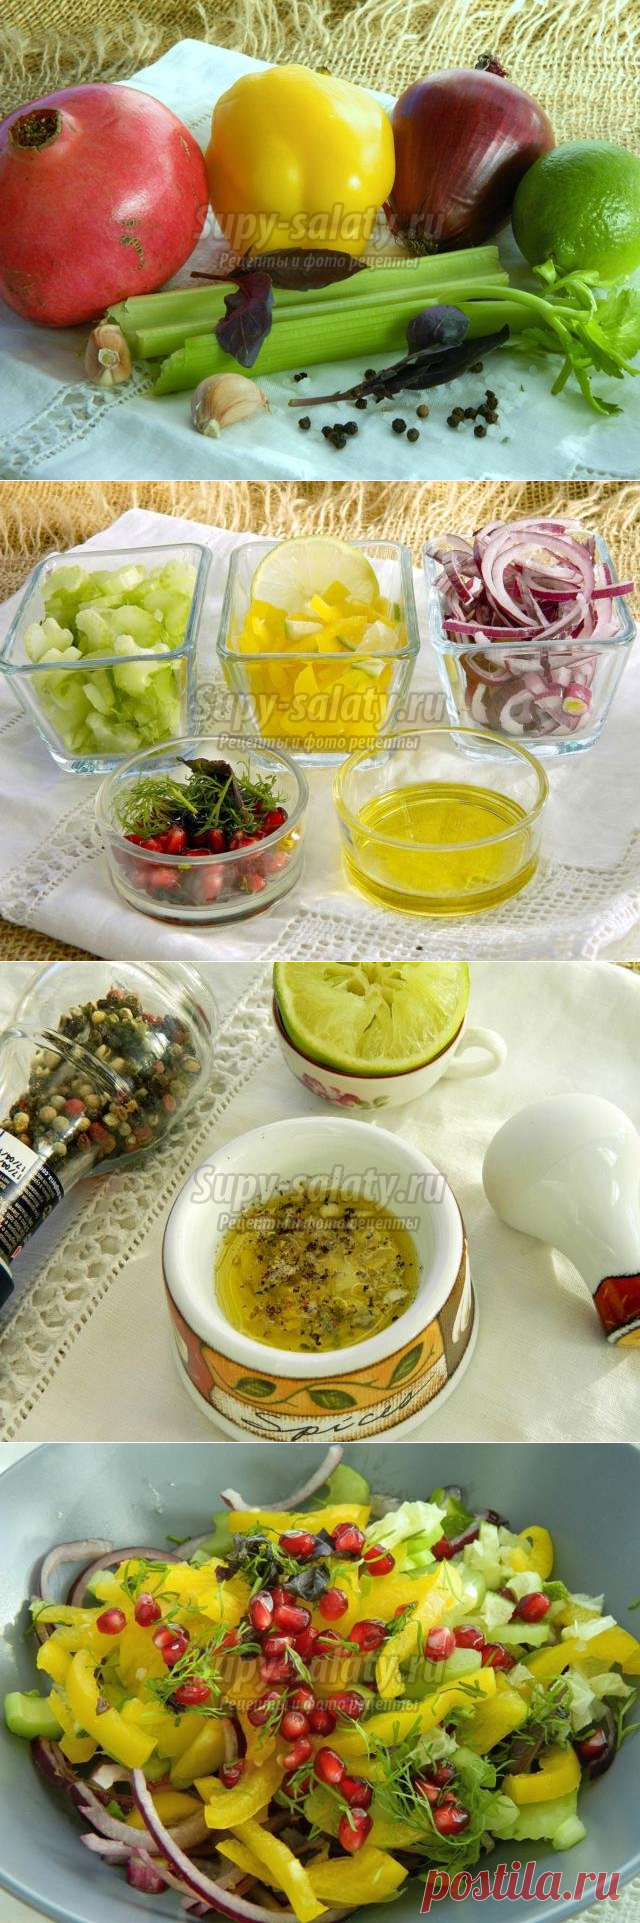 Салат из сельдерея, красного лука и сладкого перца. Рецепт с пошаговыми фото